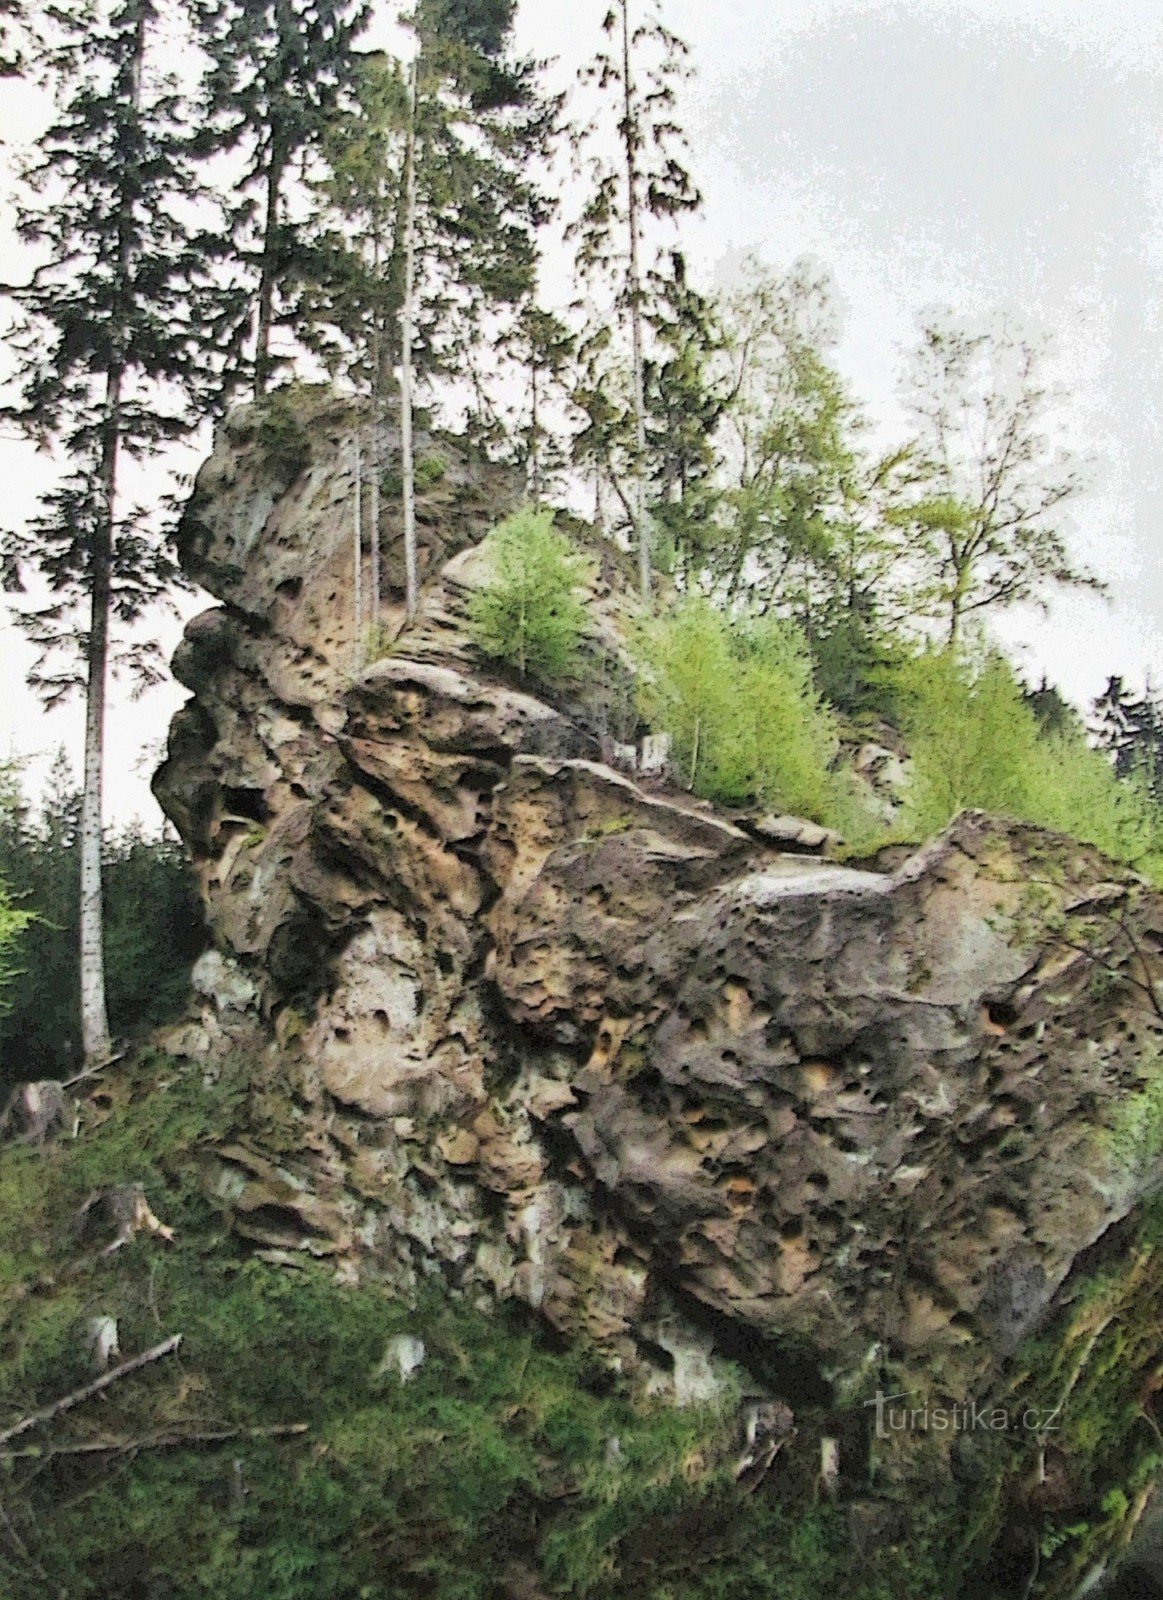 Su Lačnovské skaly per la seconda volta - retro 2001